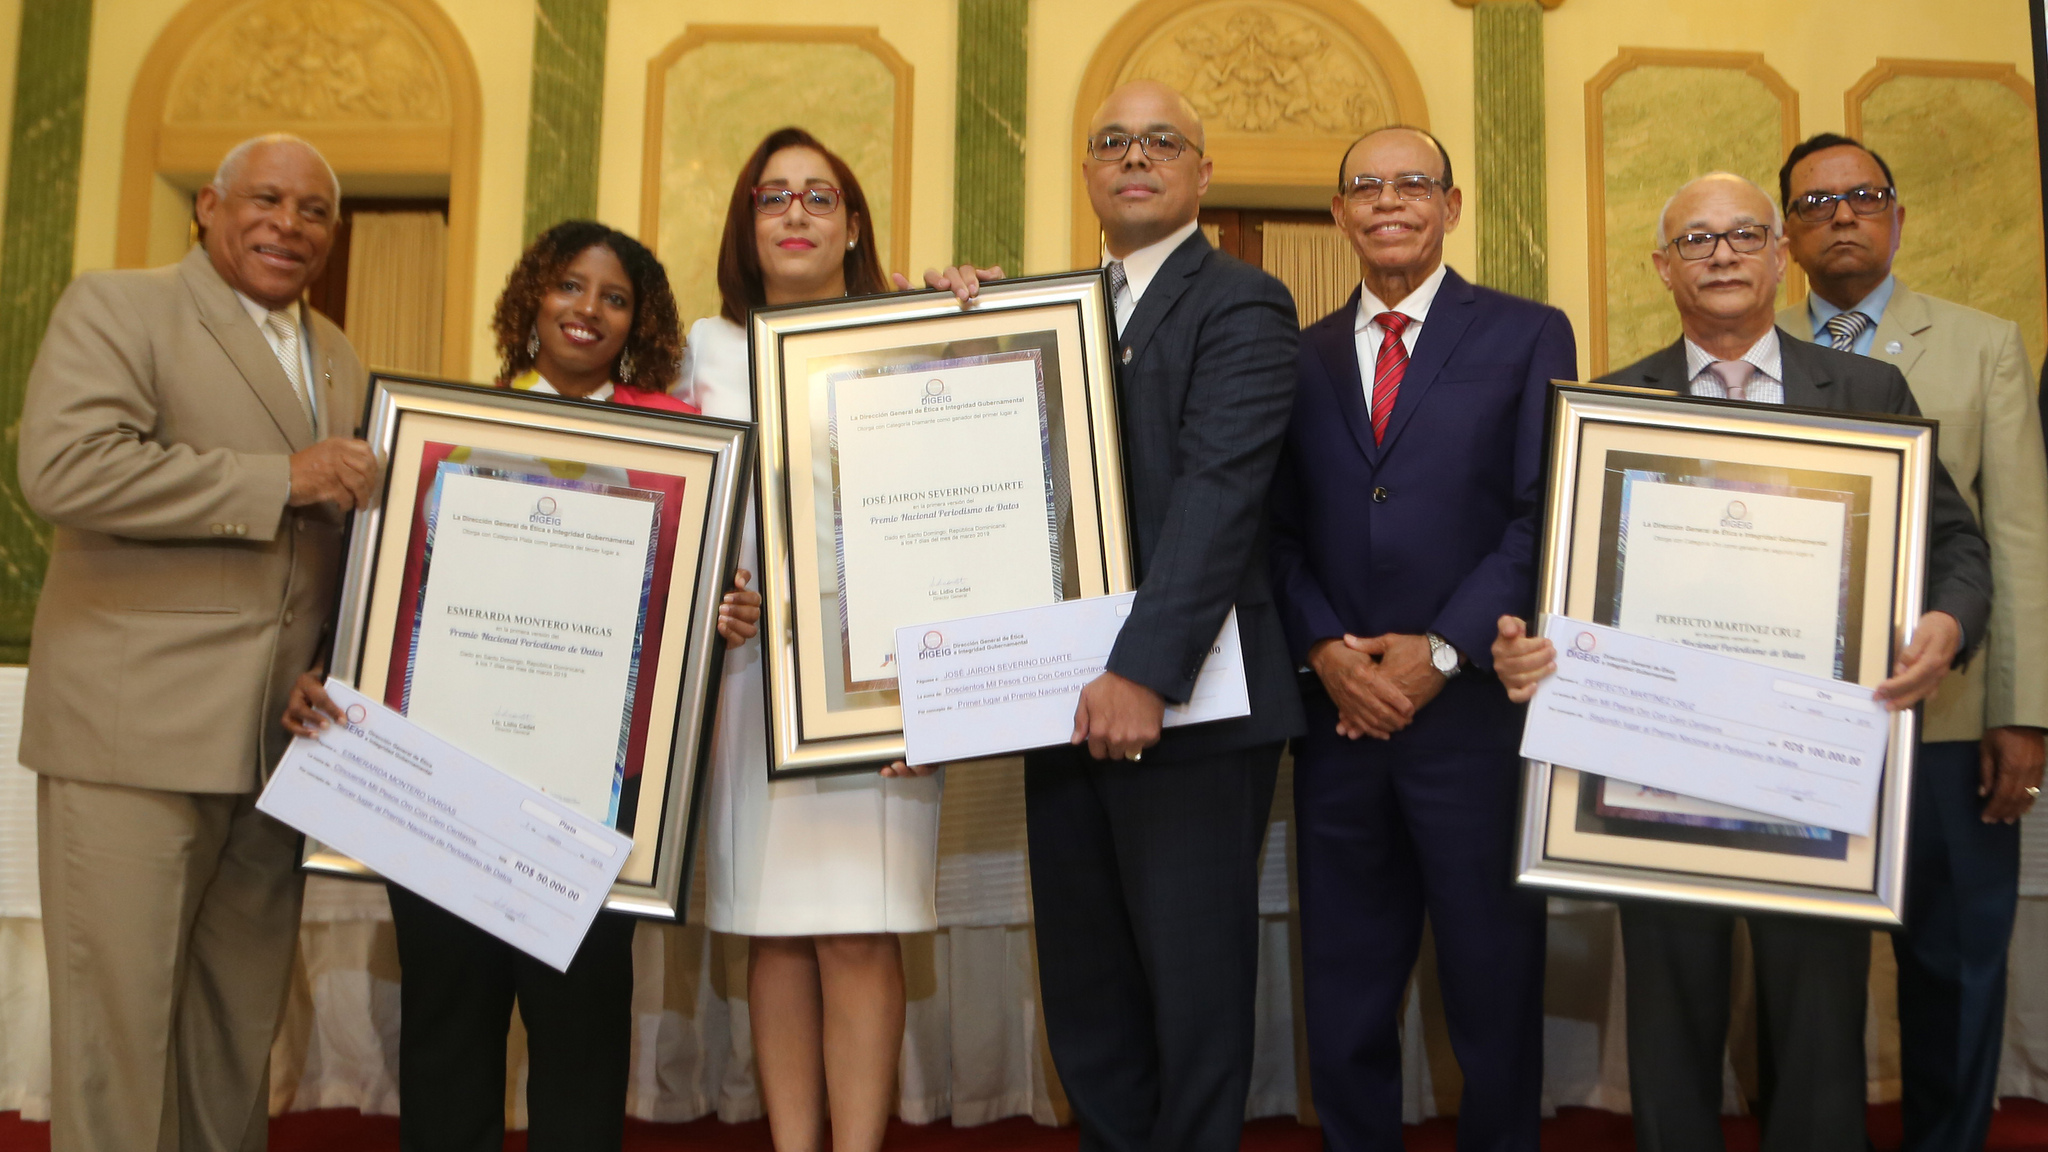 REPÚBLICA DOMINICANA: Dirección General de Ética e Integridad Gubernamental otorga Premio Nacional de Periodismo de Datos